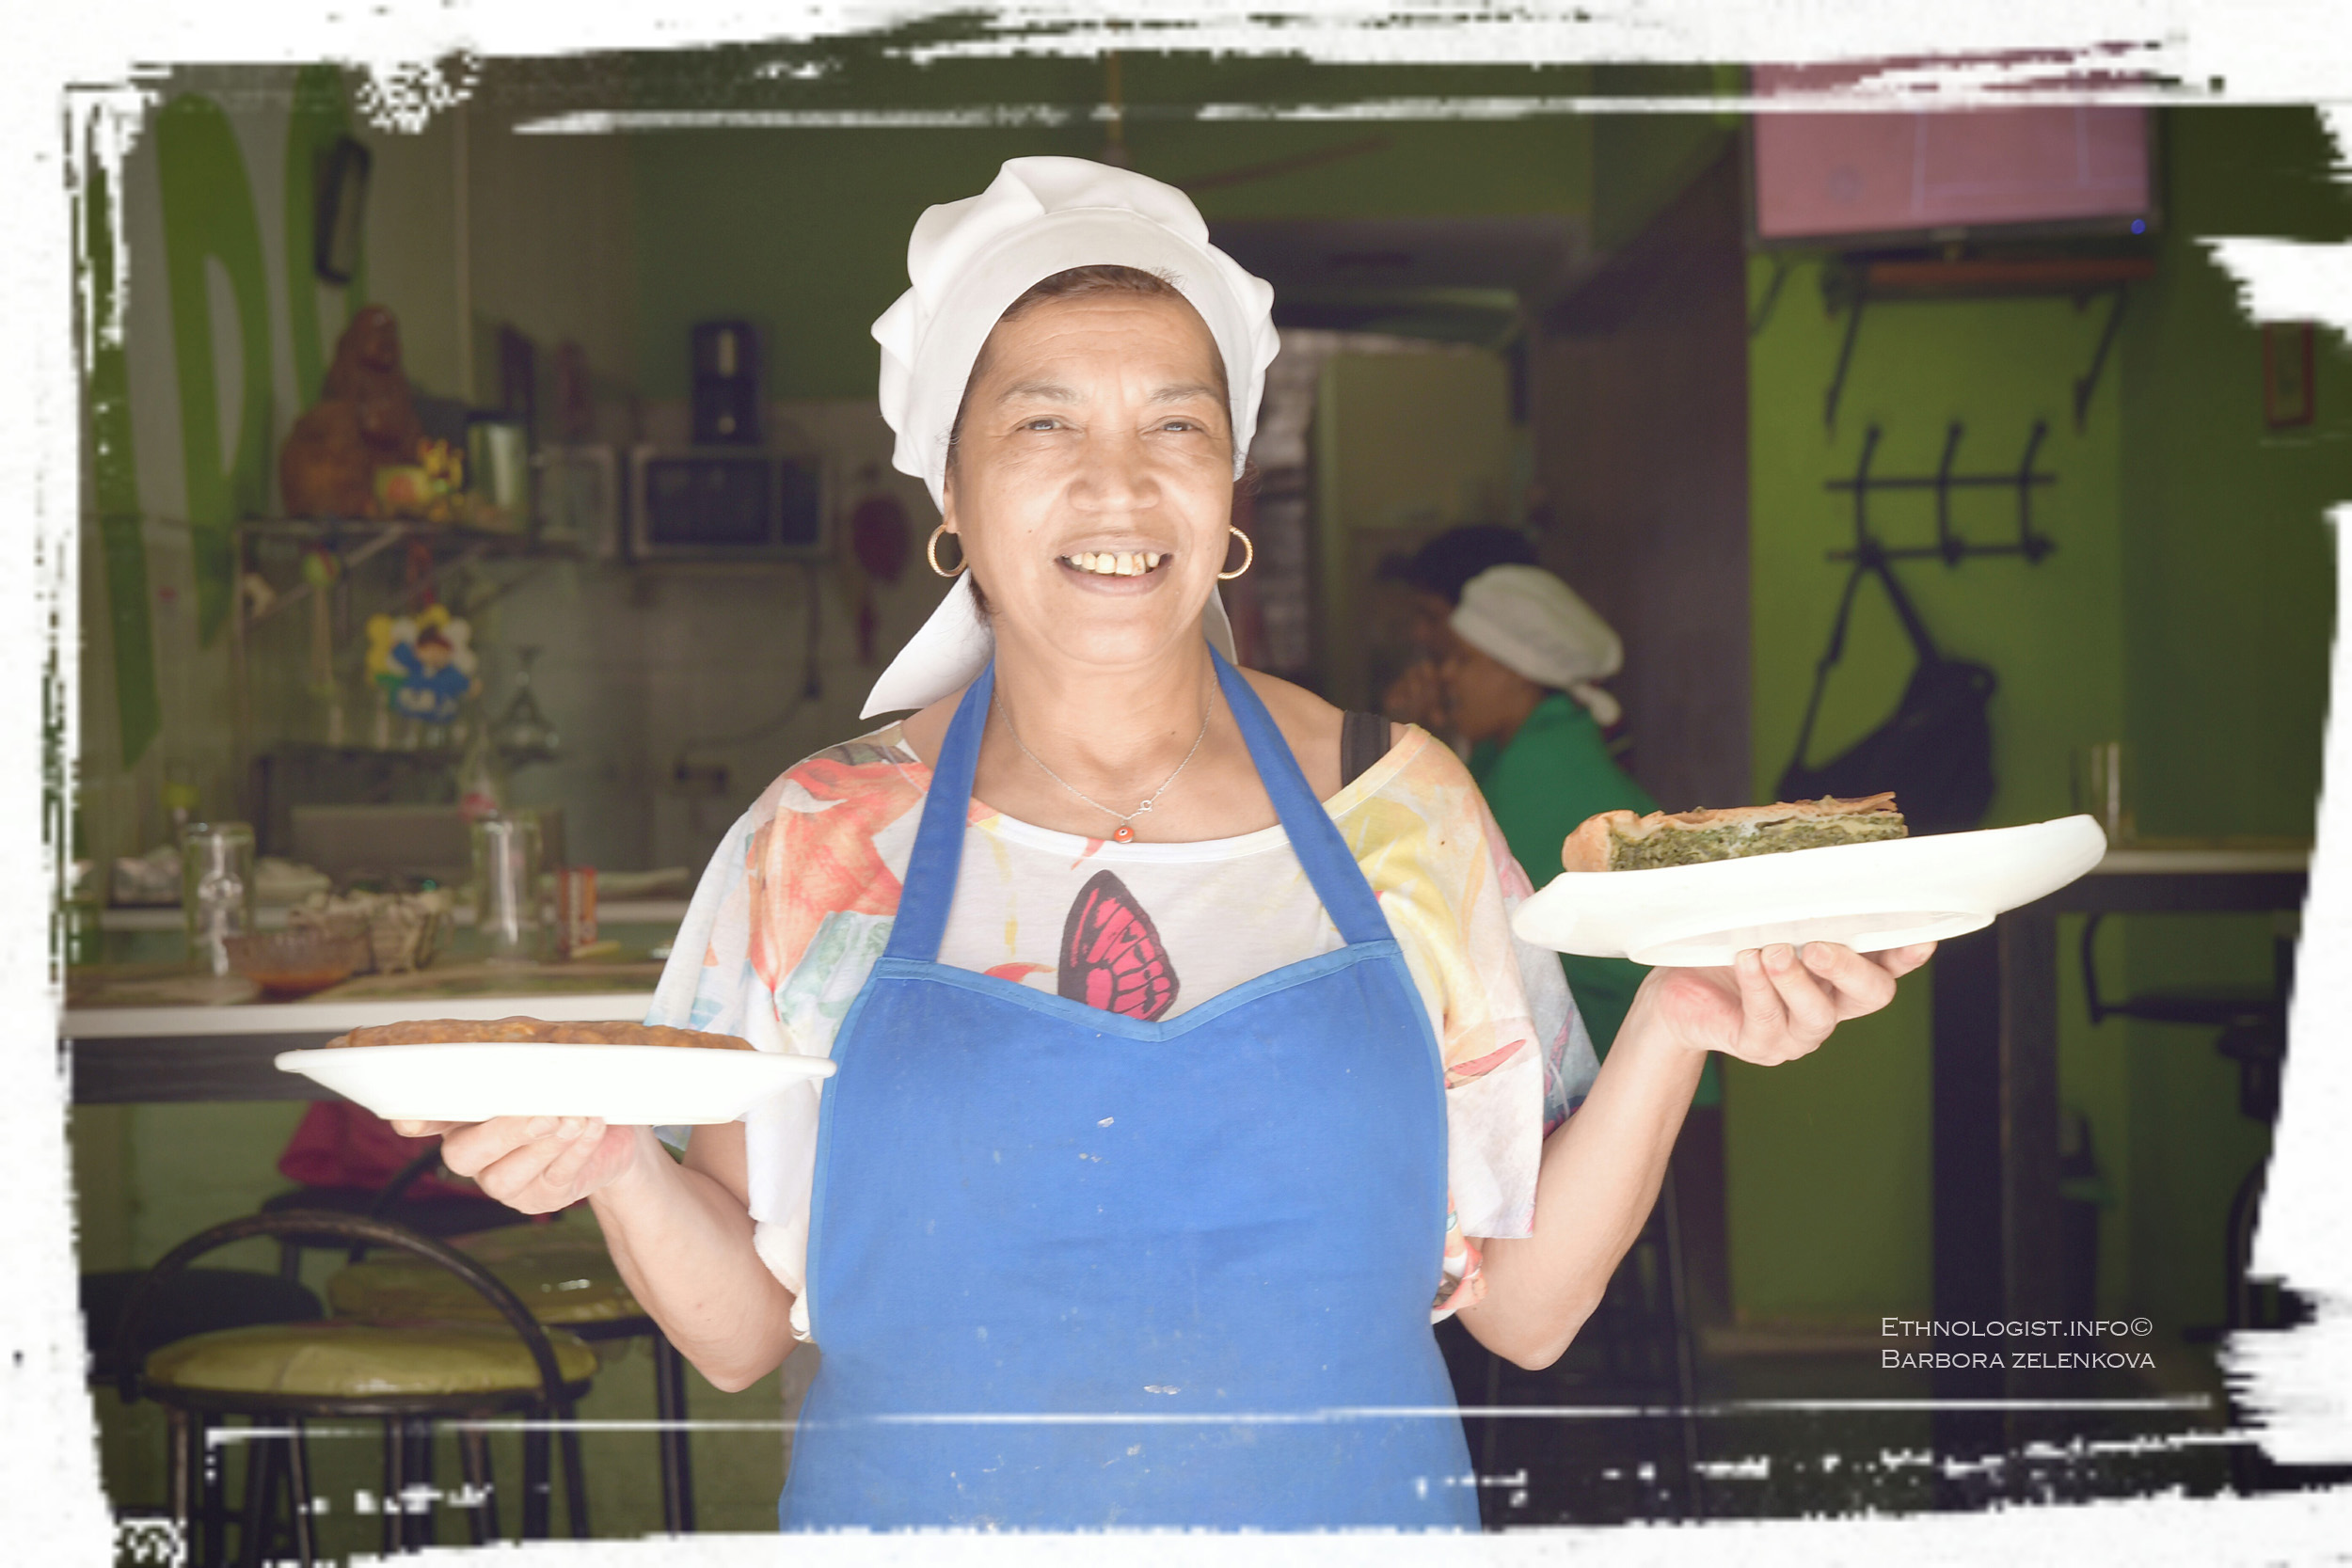 Rotisería Maido v Montevideu a její šéfkuchařka Kristina se špenátovou tortou. Foto: Barbora Zelenková, 2016.